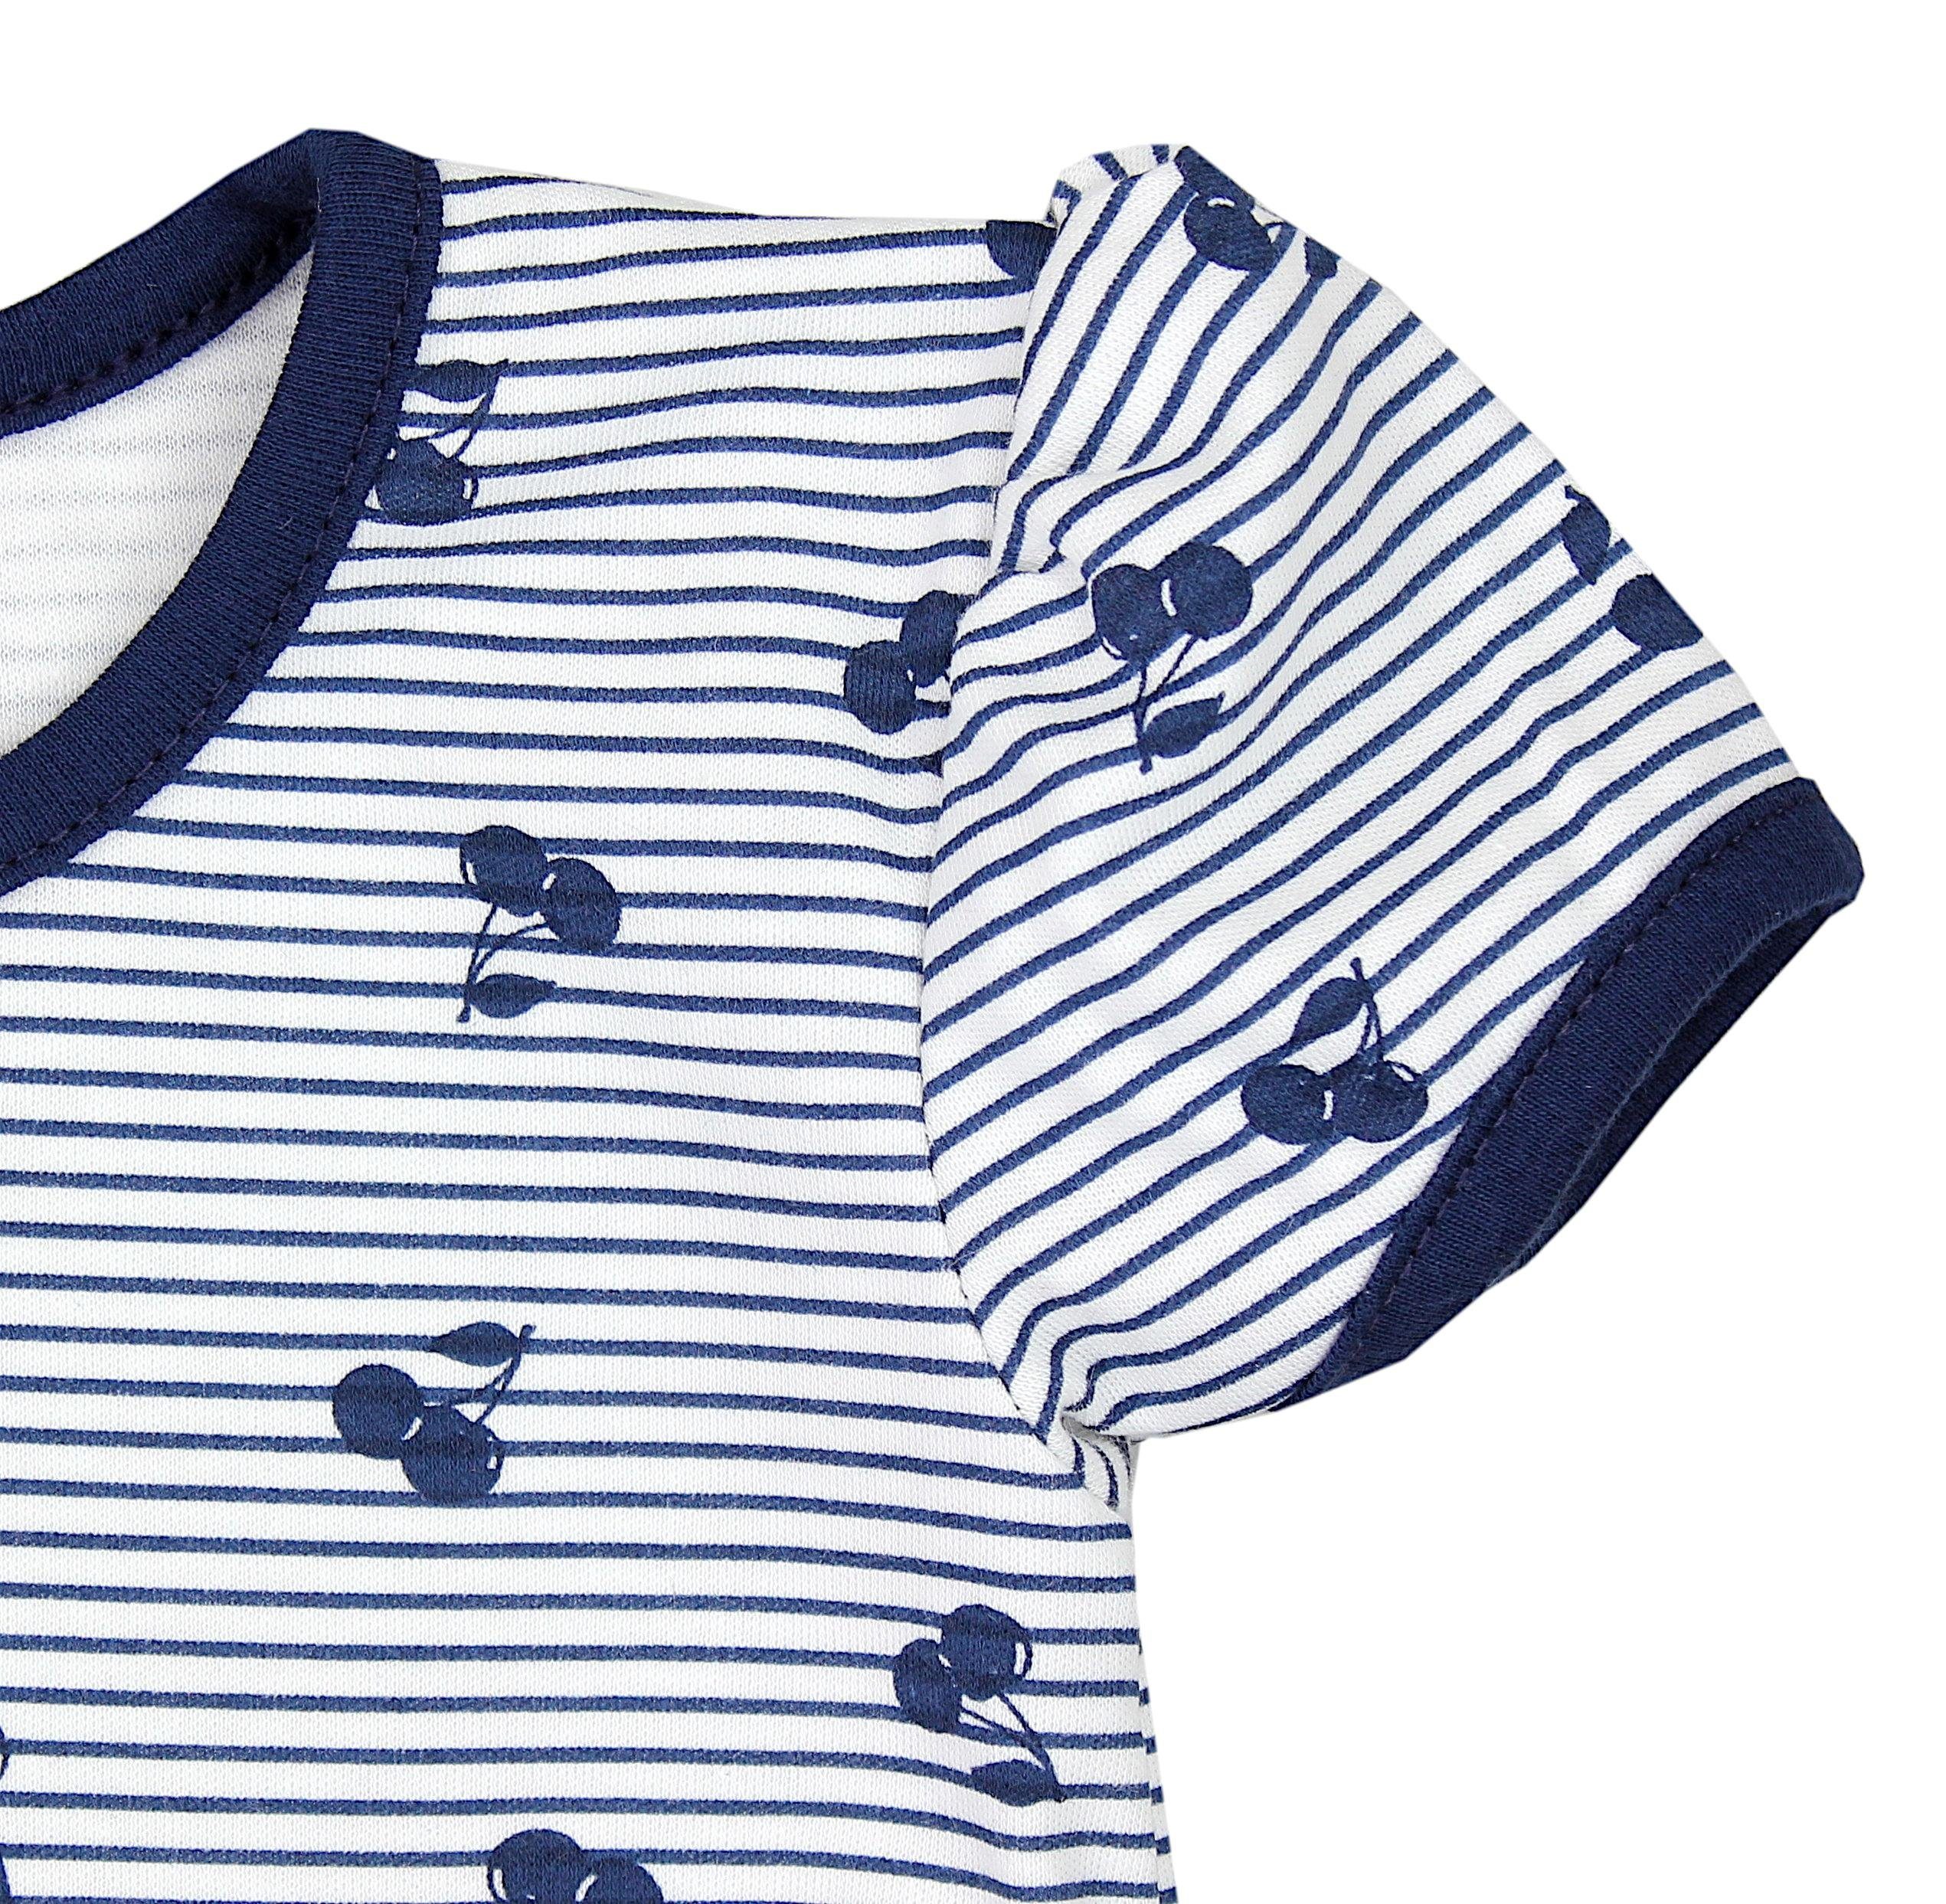 TupTam Shirt & Hose Baby Amaranth T-Shirt Shorts Sommer Kirschen TupTam Streifen Bekleidung Set Mädchen Dunkelblau 